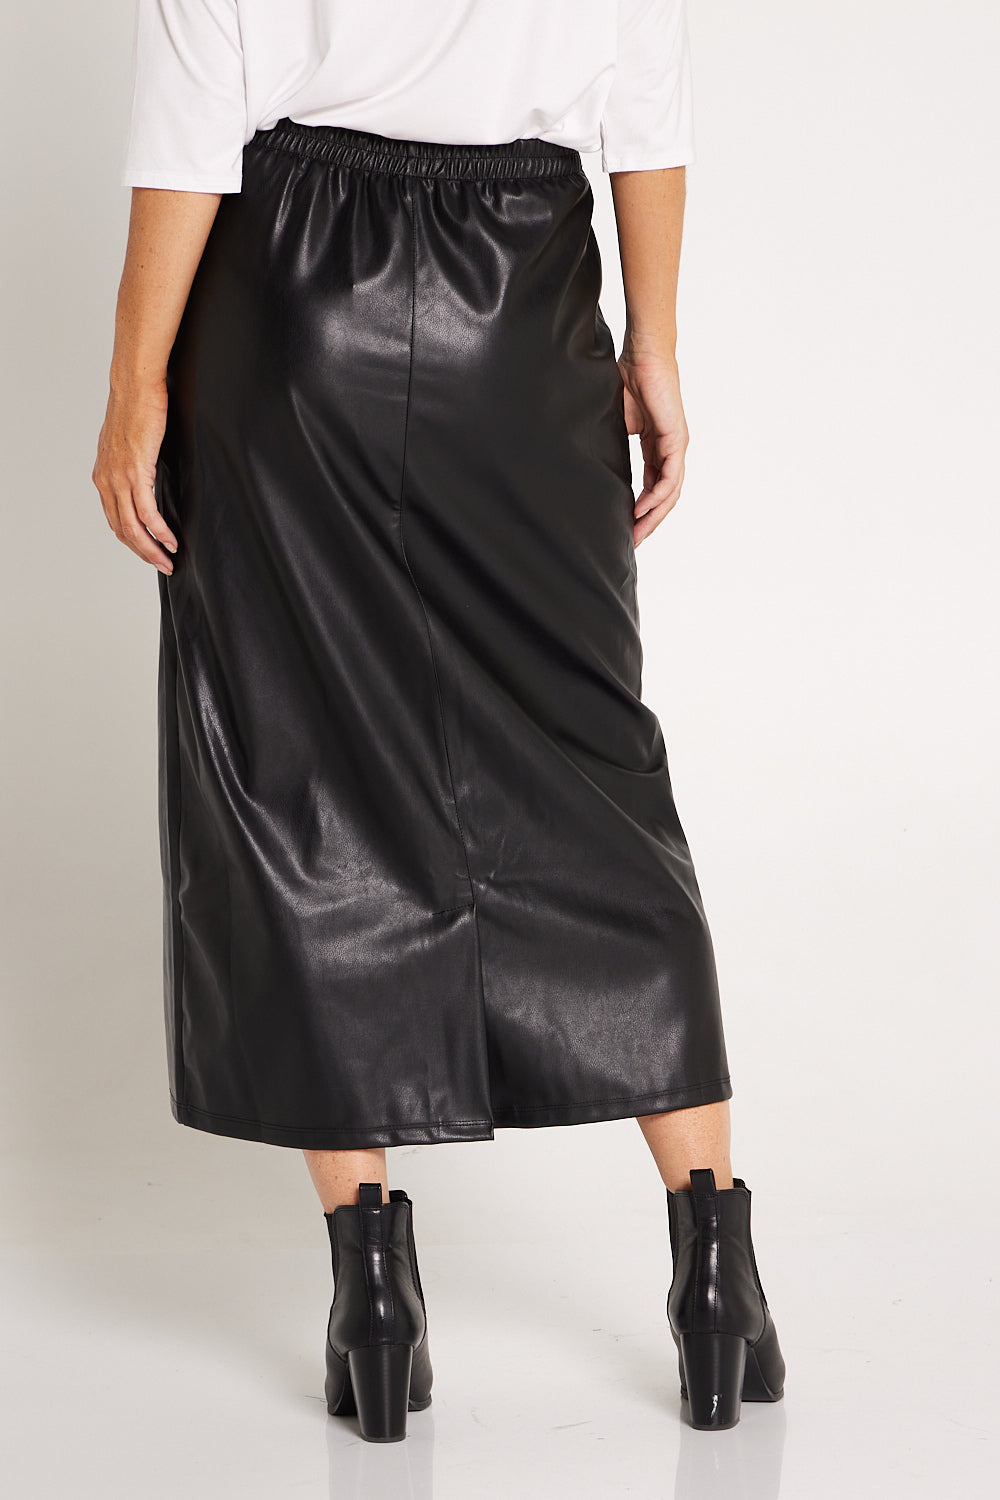 Henner Black Vegan Leather Skirt – Safiyaa London